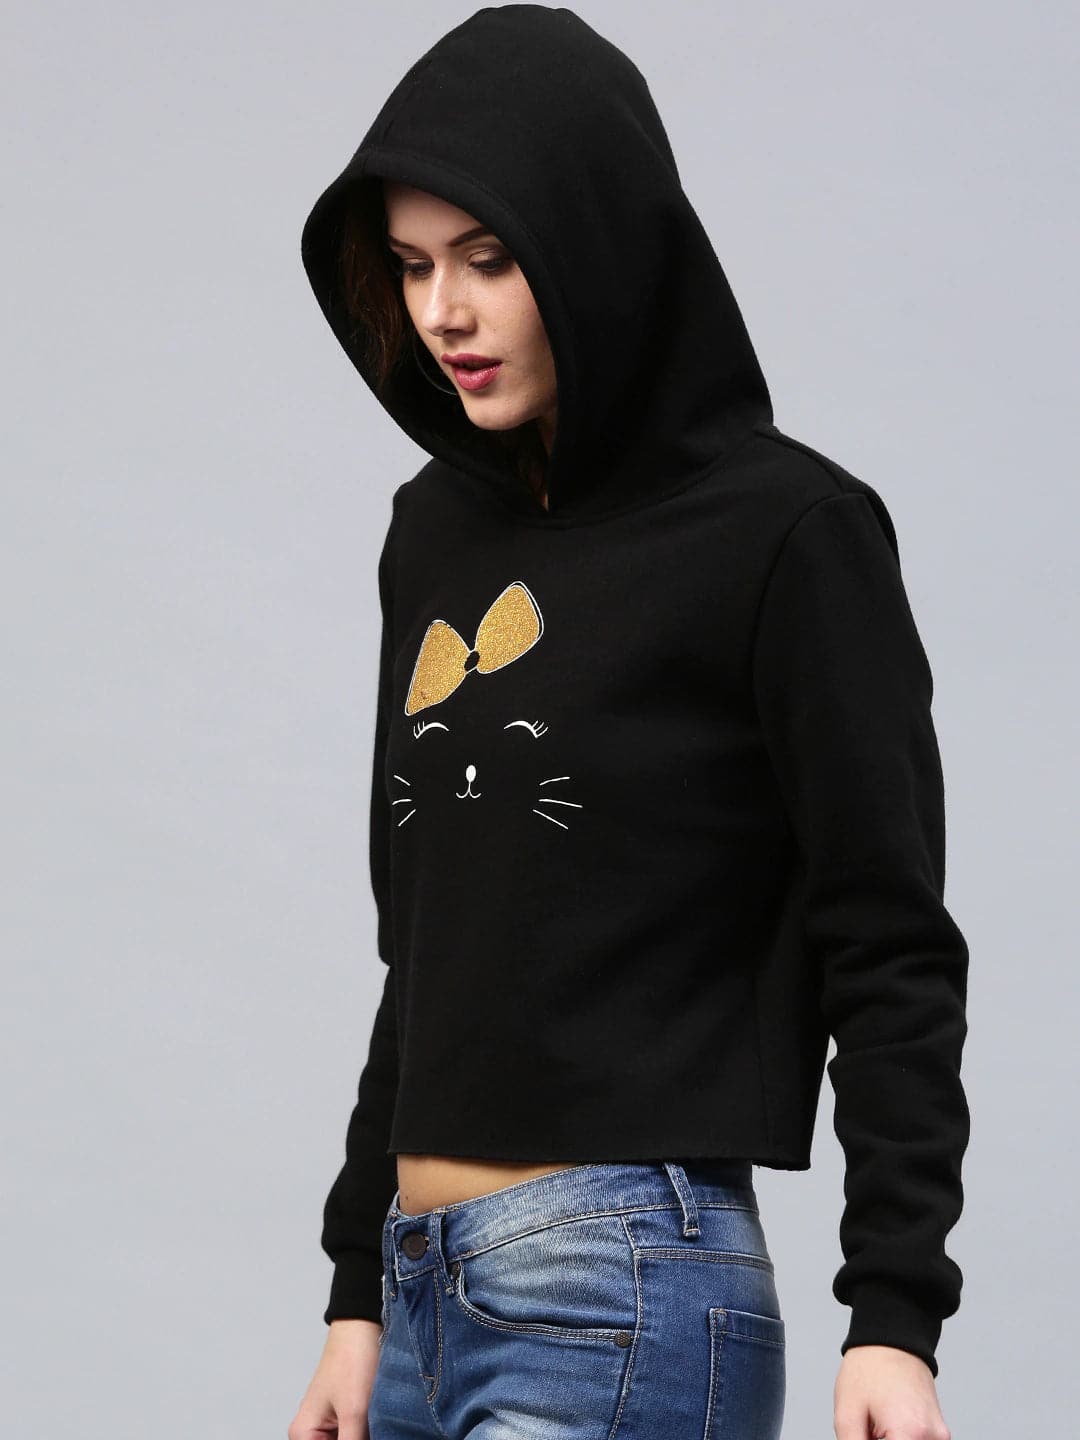 Bow Kitty Black Sweatshirt-Sweatshirts-SASSAFRAS